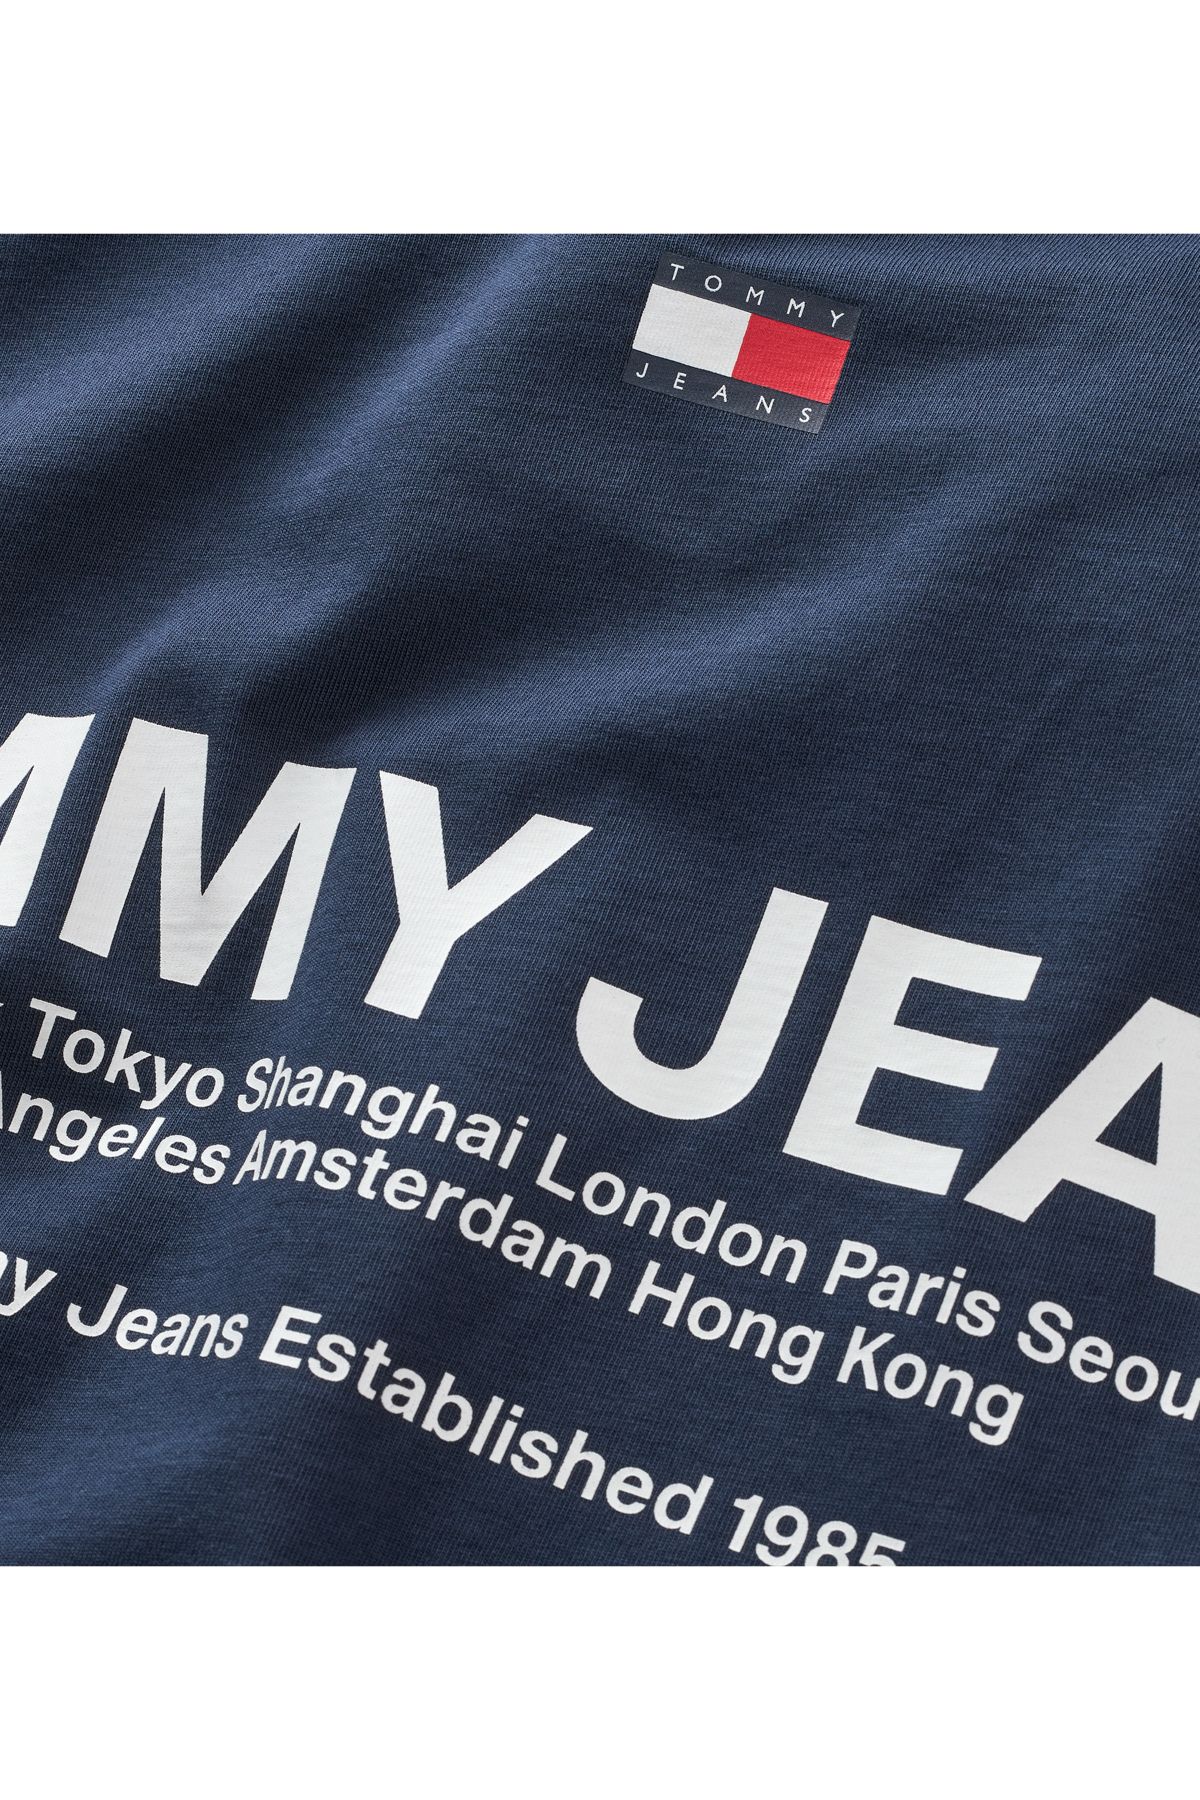 beliebte Wahl Tommy Hilfiger T-Shirt Herren Navy Twilight - Trendyol